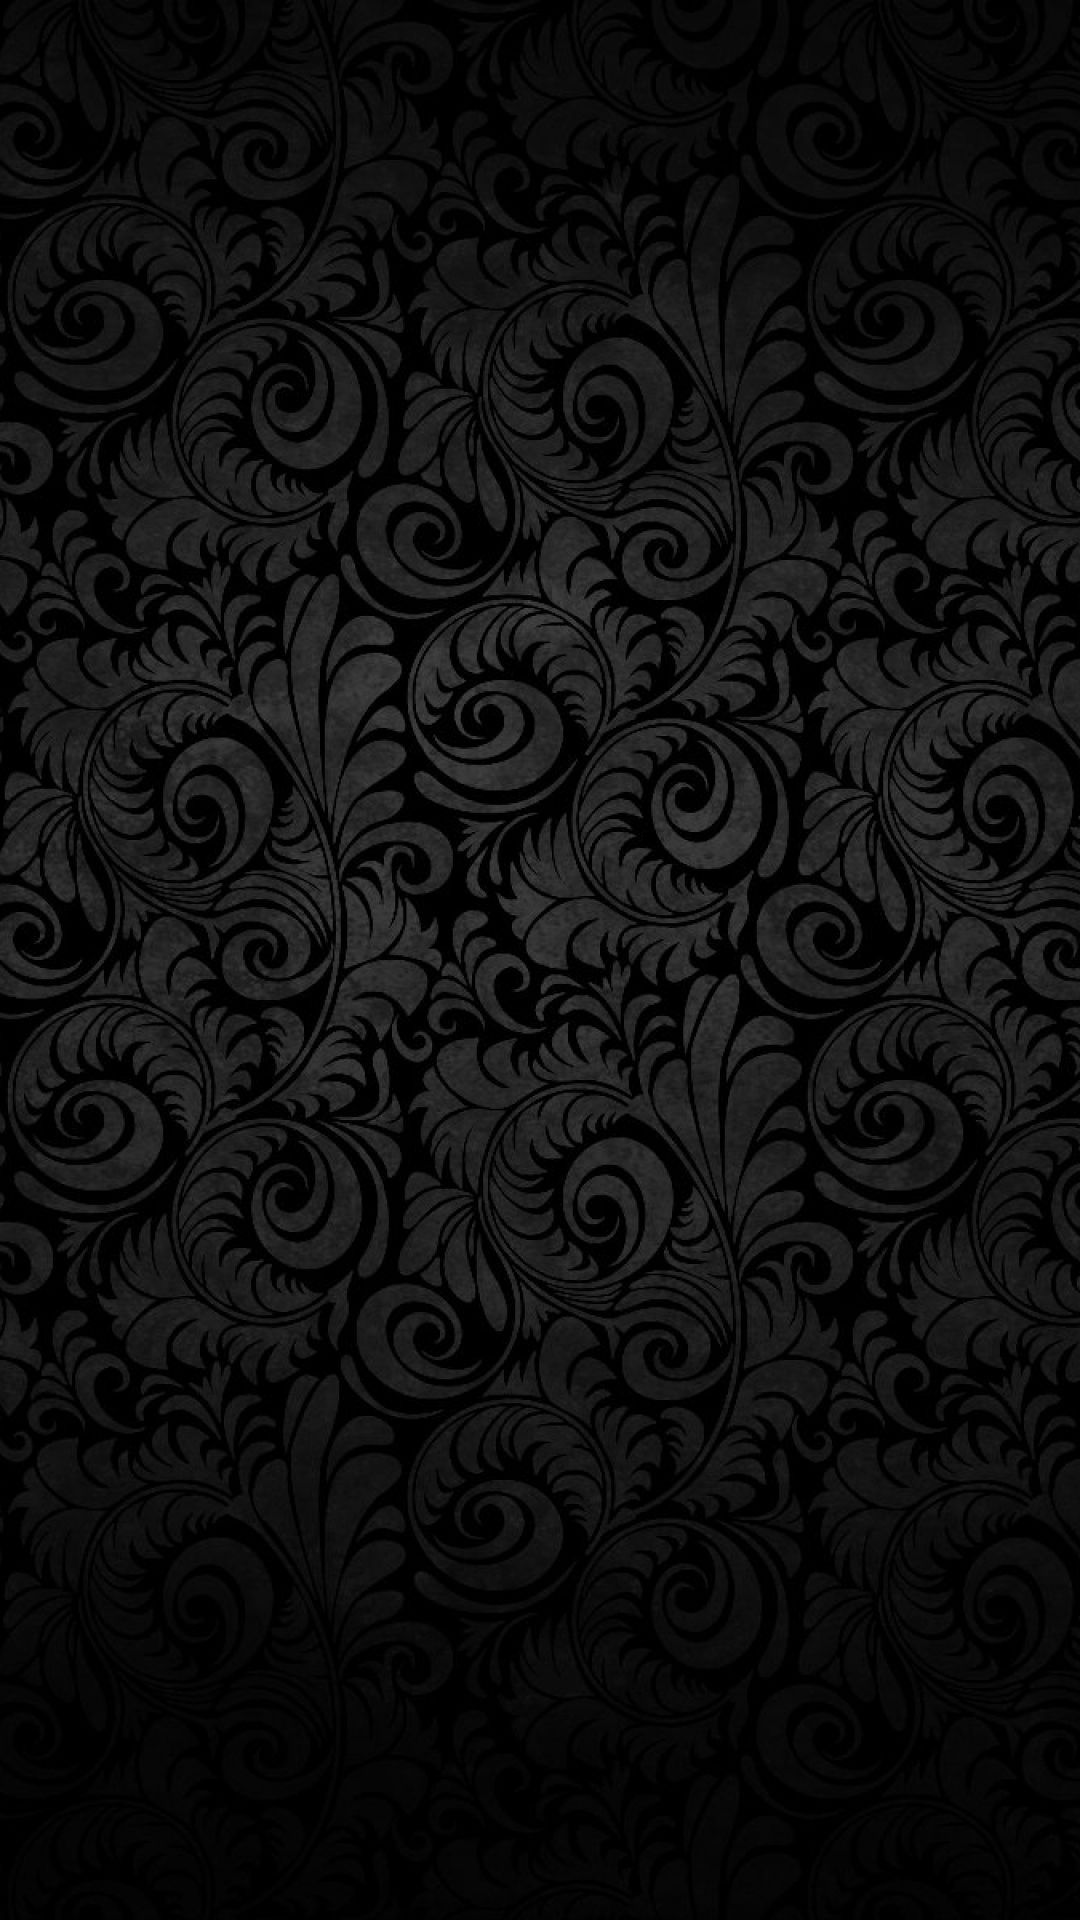 Black Wallpapers For iPhone hội tụ đầy đủ những hình ảnh đẹp, tuyệt vời và phù hợp cho mọi sở thích. Với đầy đủ phiên bản, bạn có thể dễ dàng lựa chọn cho mình những bức tranh đẹp nhất. Tất cả chỉ trong một ứng dụng, hãy khám phá và trang trí điện thoại của mình bằng bộ sưu tập này!